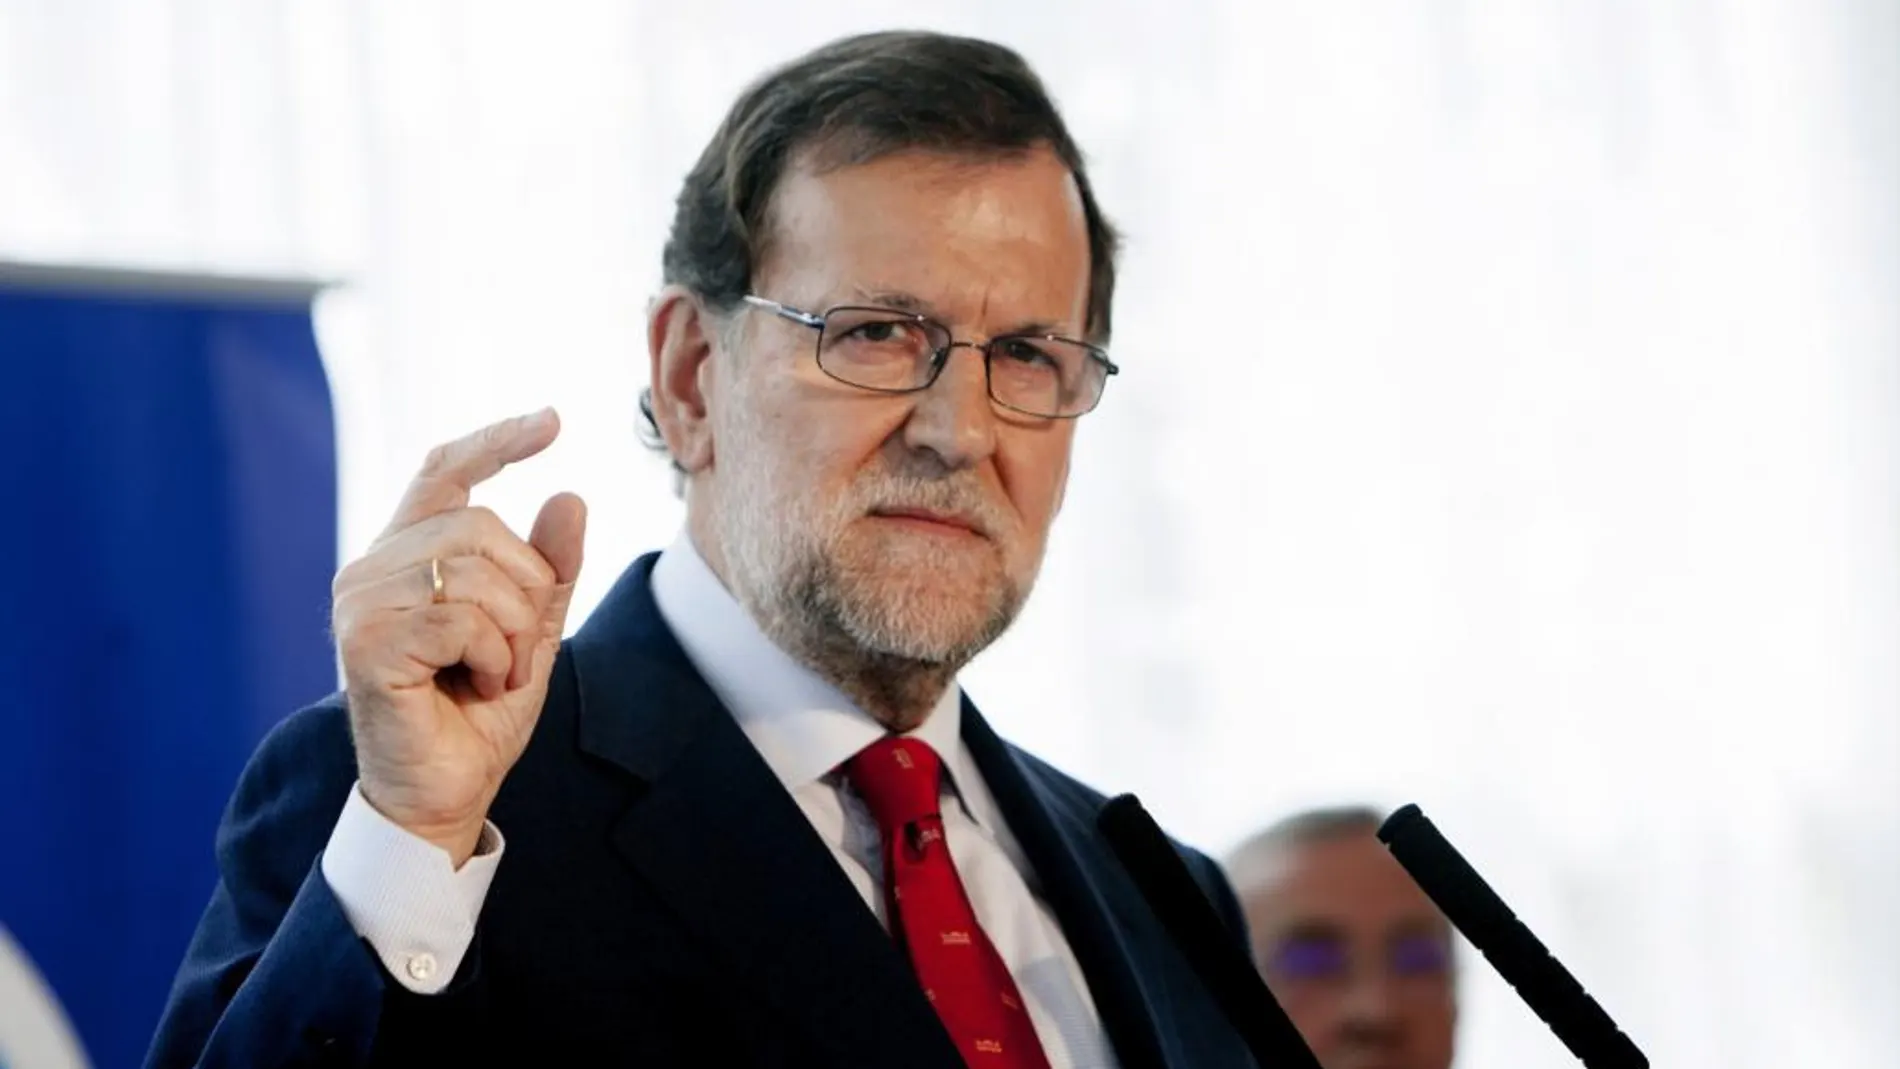 El presidente del Gobierno, Mariano Rajoy, durante su intervención en un almuerzo en Badajoz